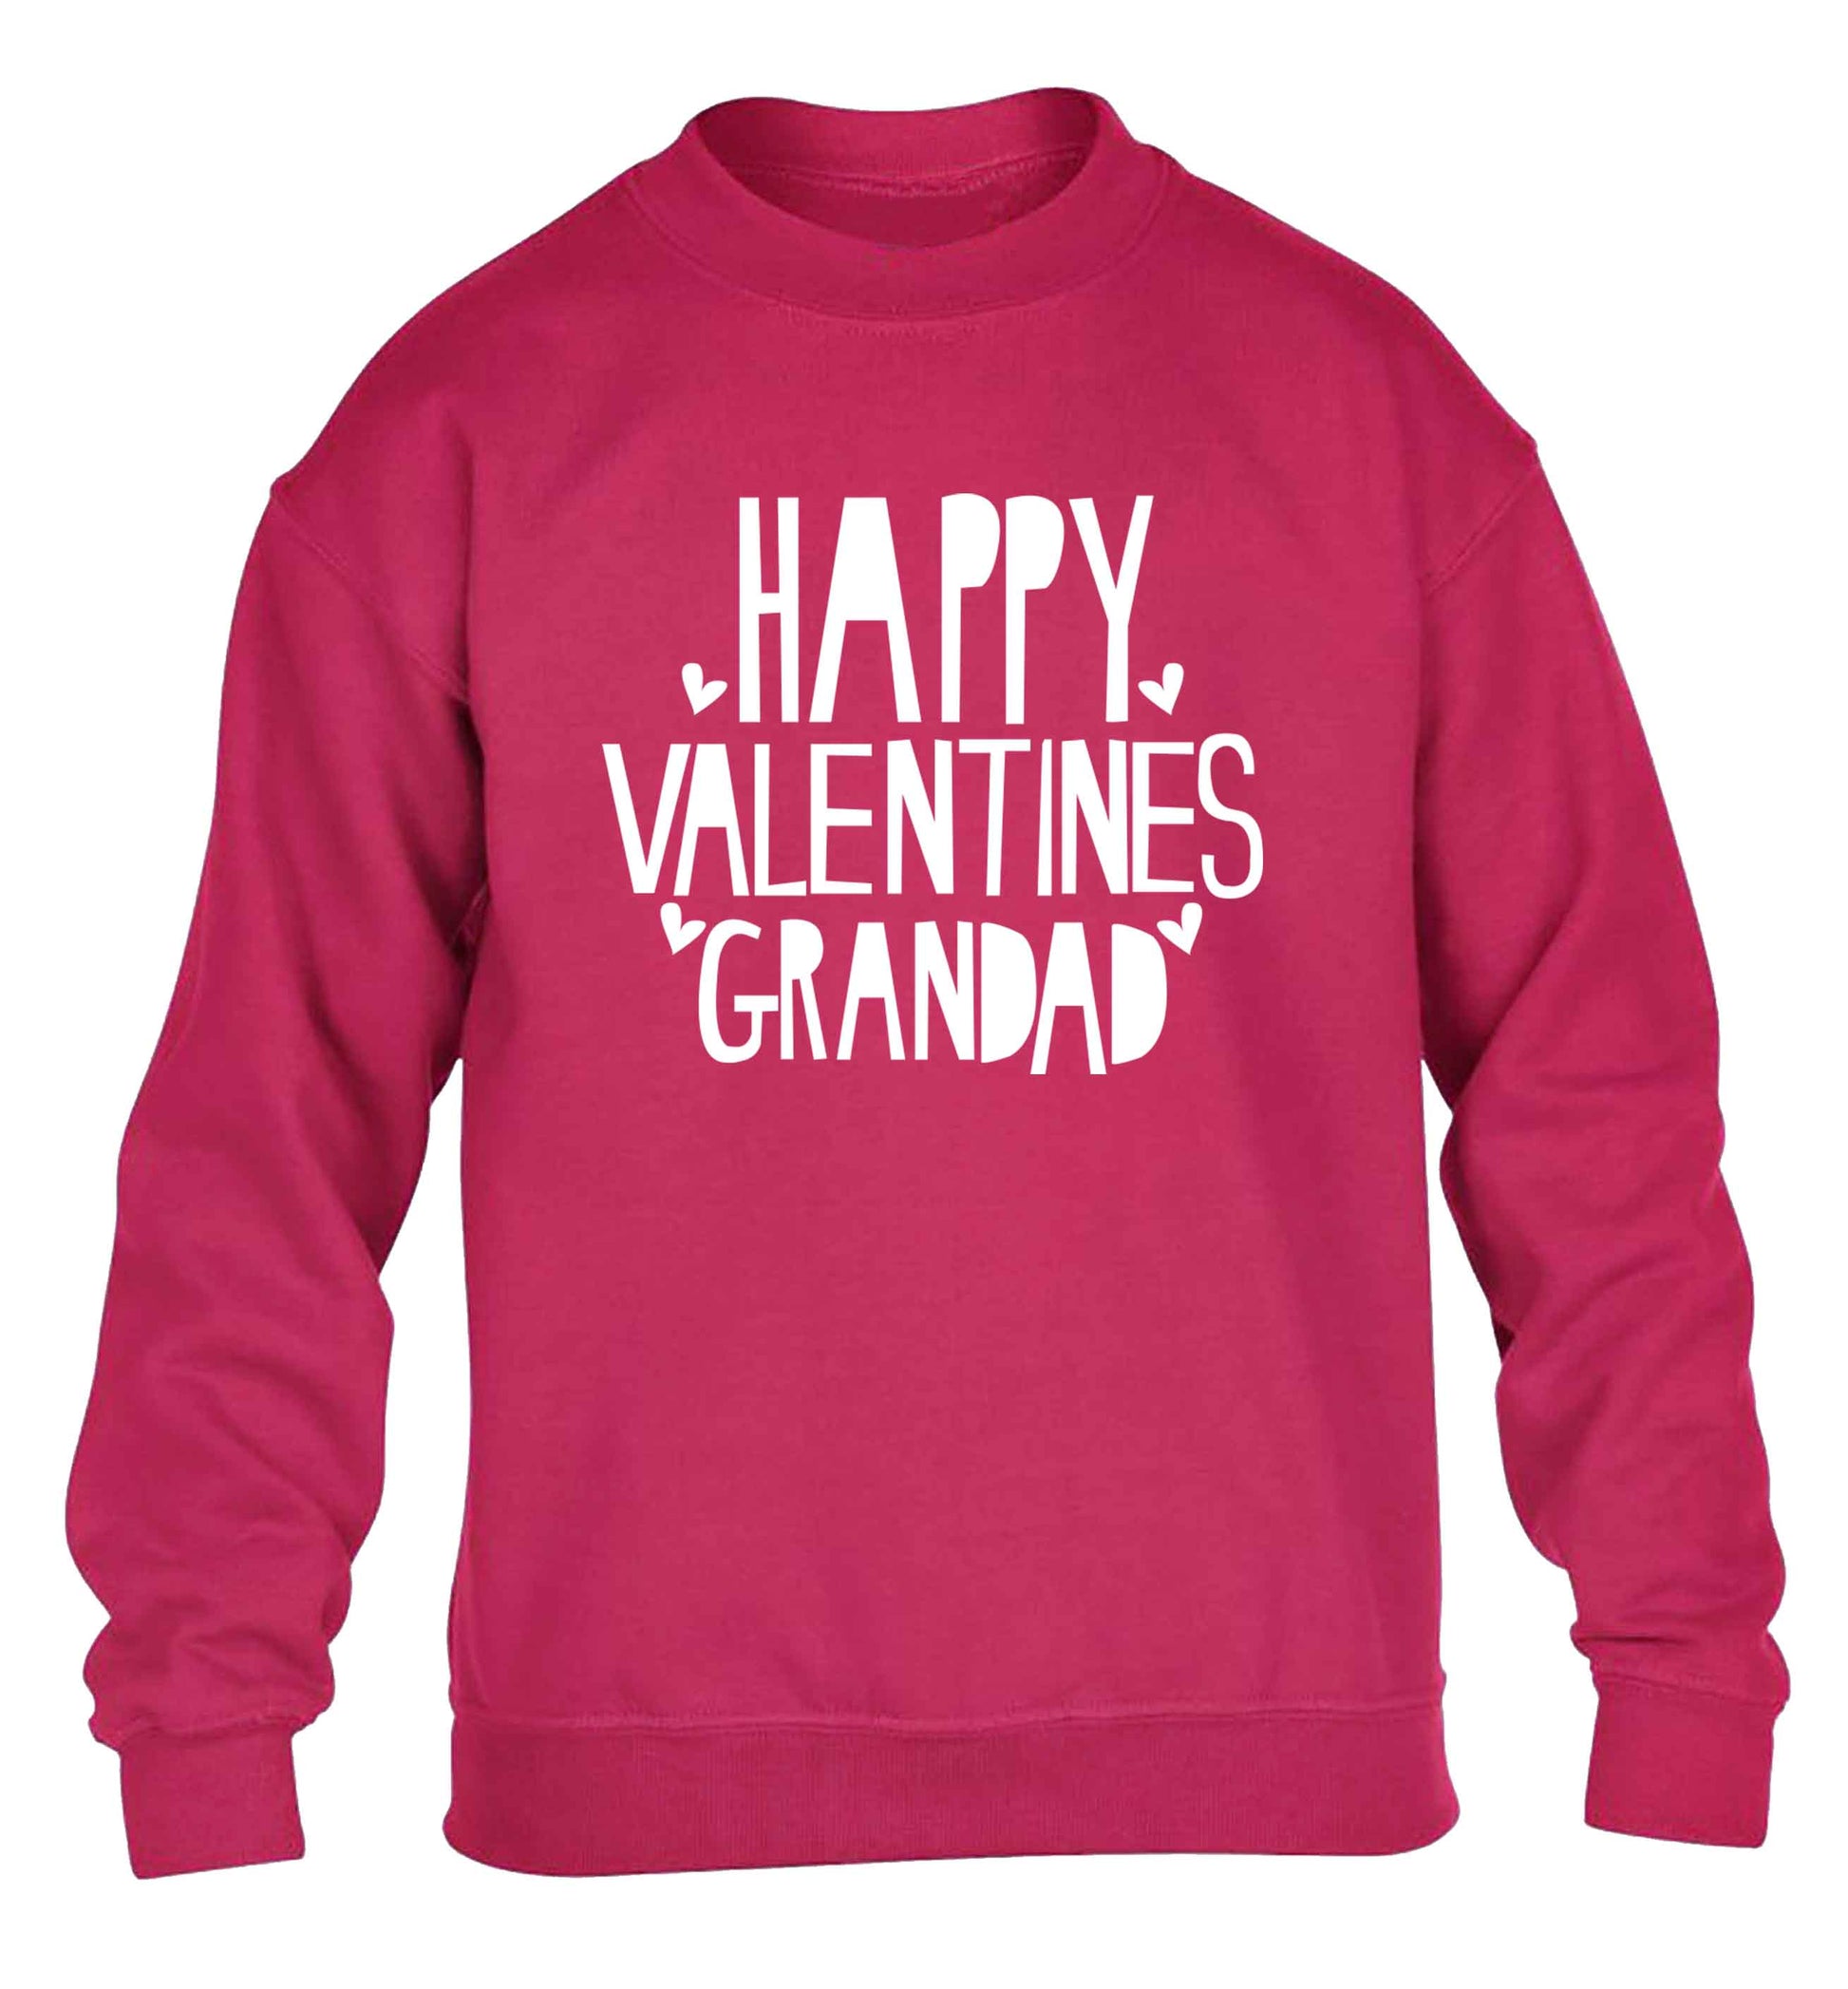 Happy valentines grandad children's pink sweater 12-13 Years